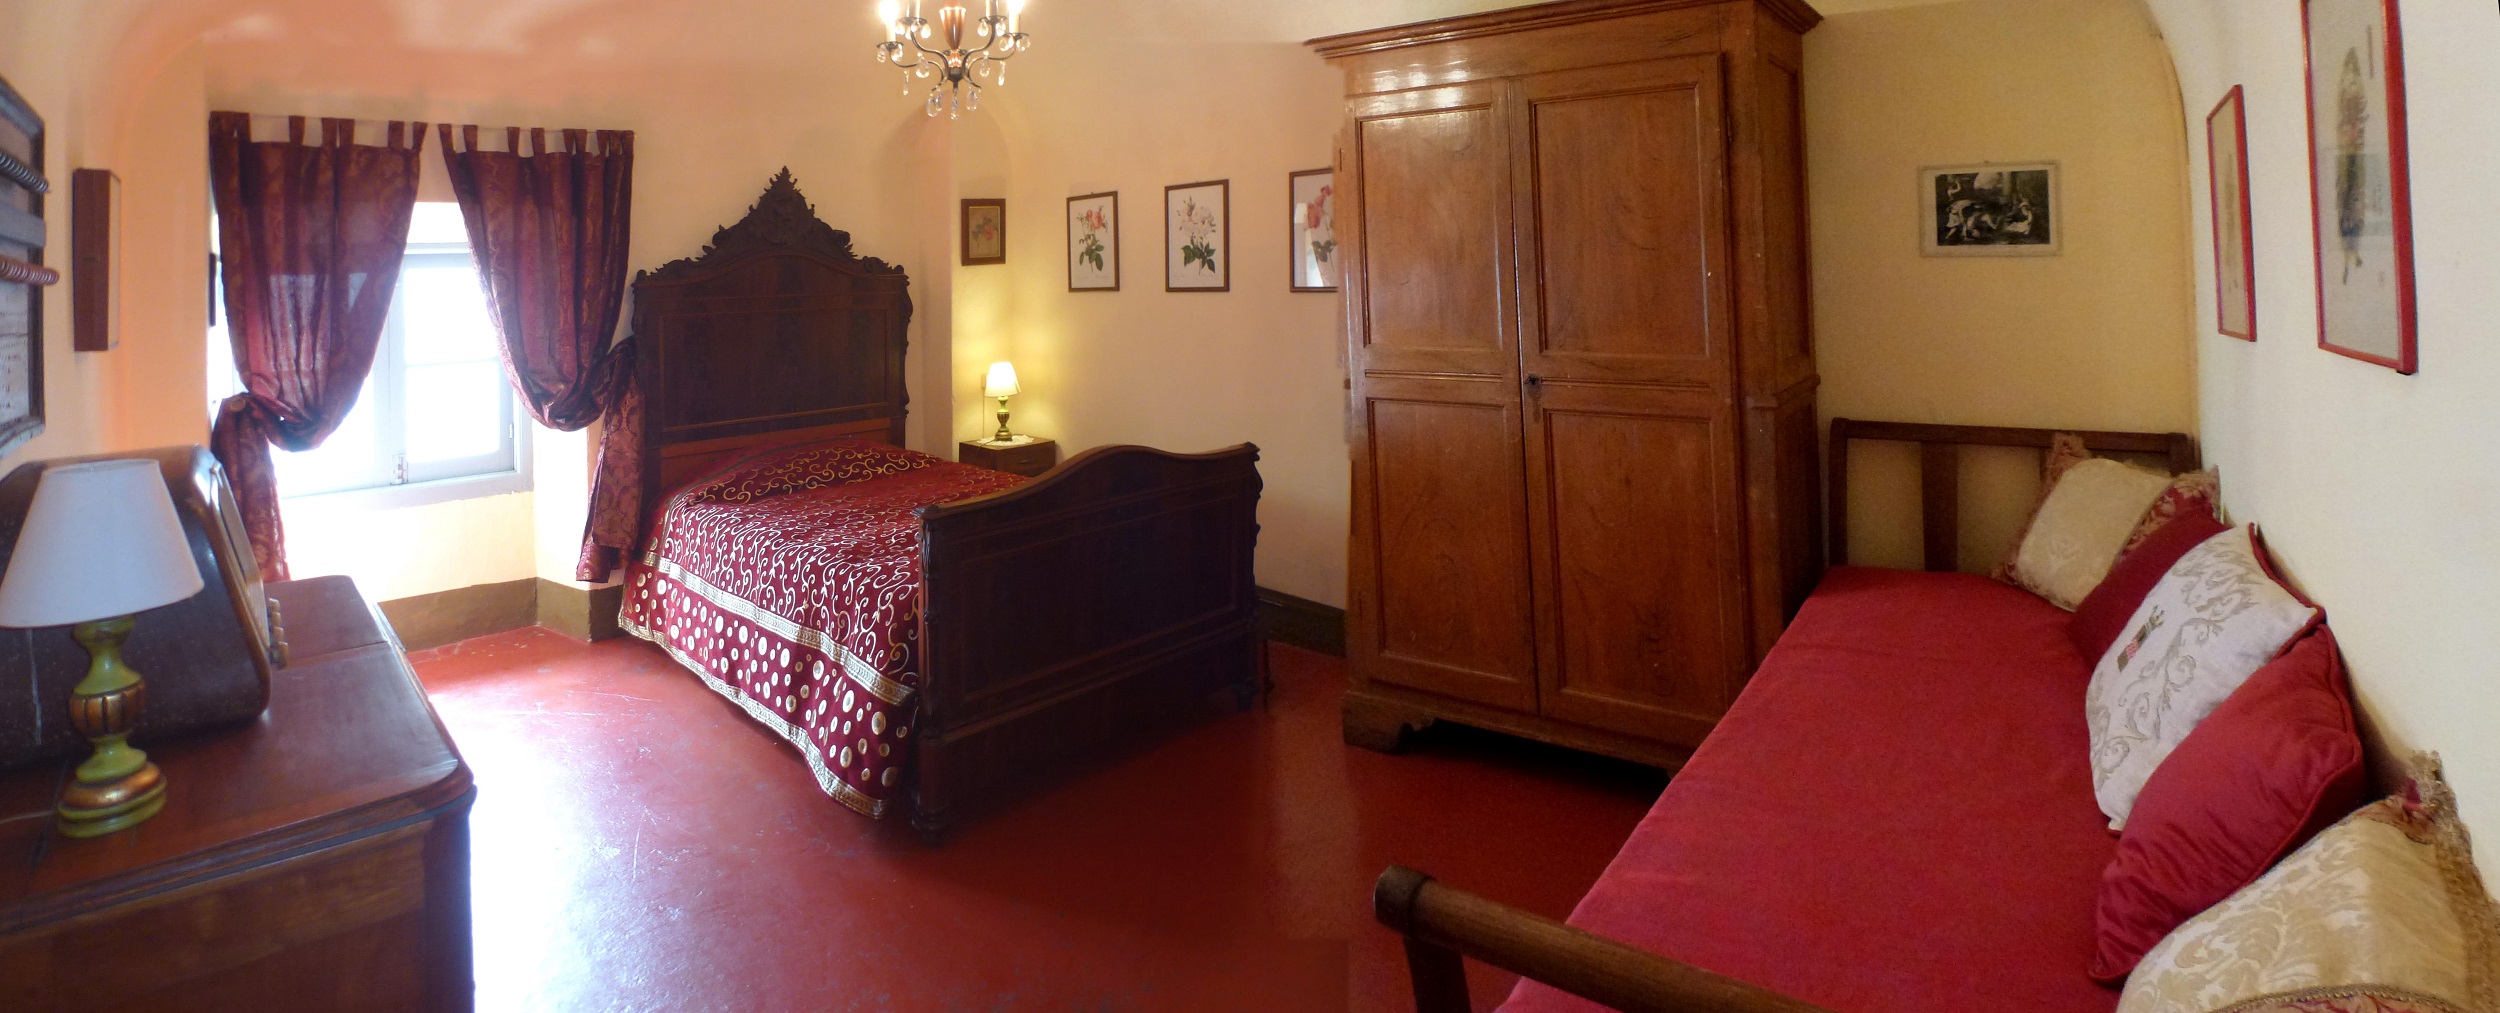 OS Castle - Dimora Storica - Romantico appartamento nella torre del Castello di Tassarolo